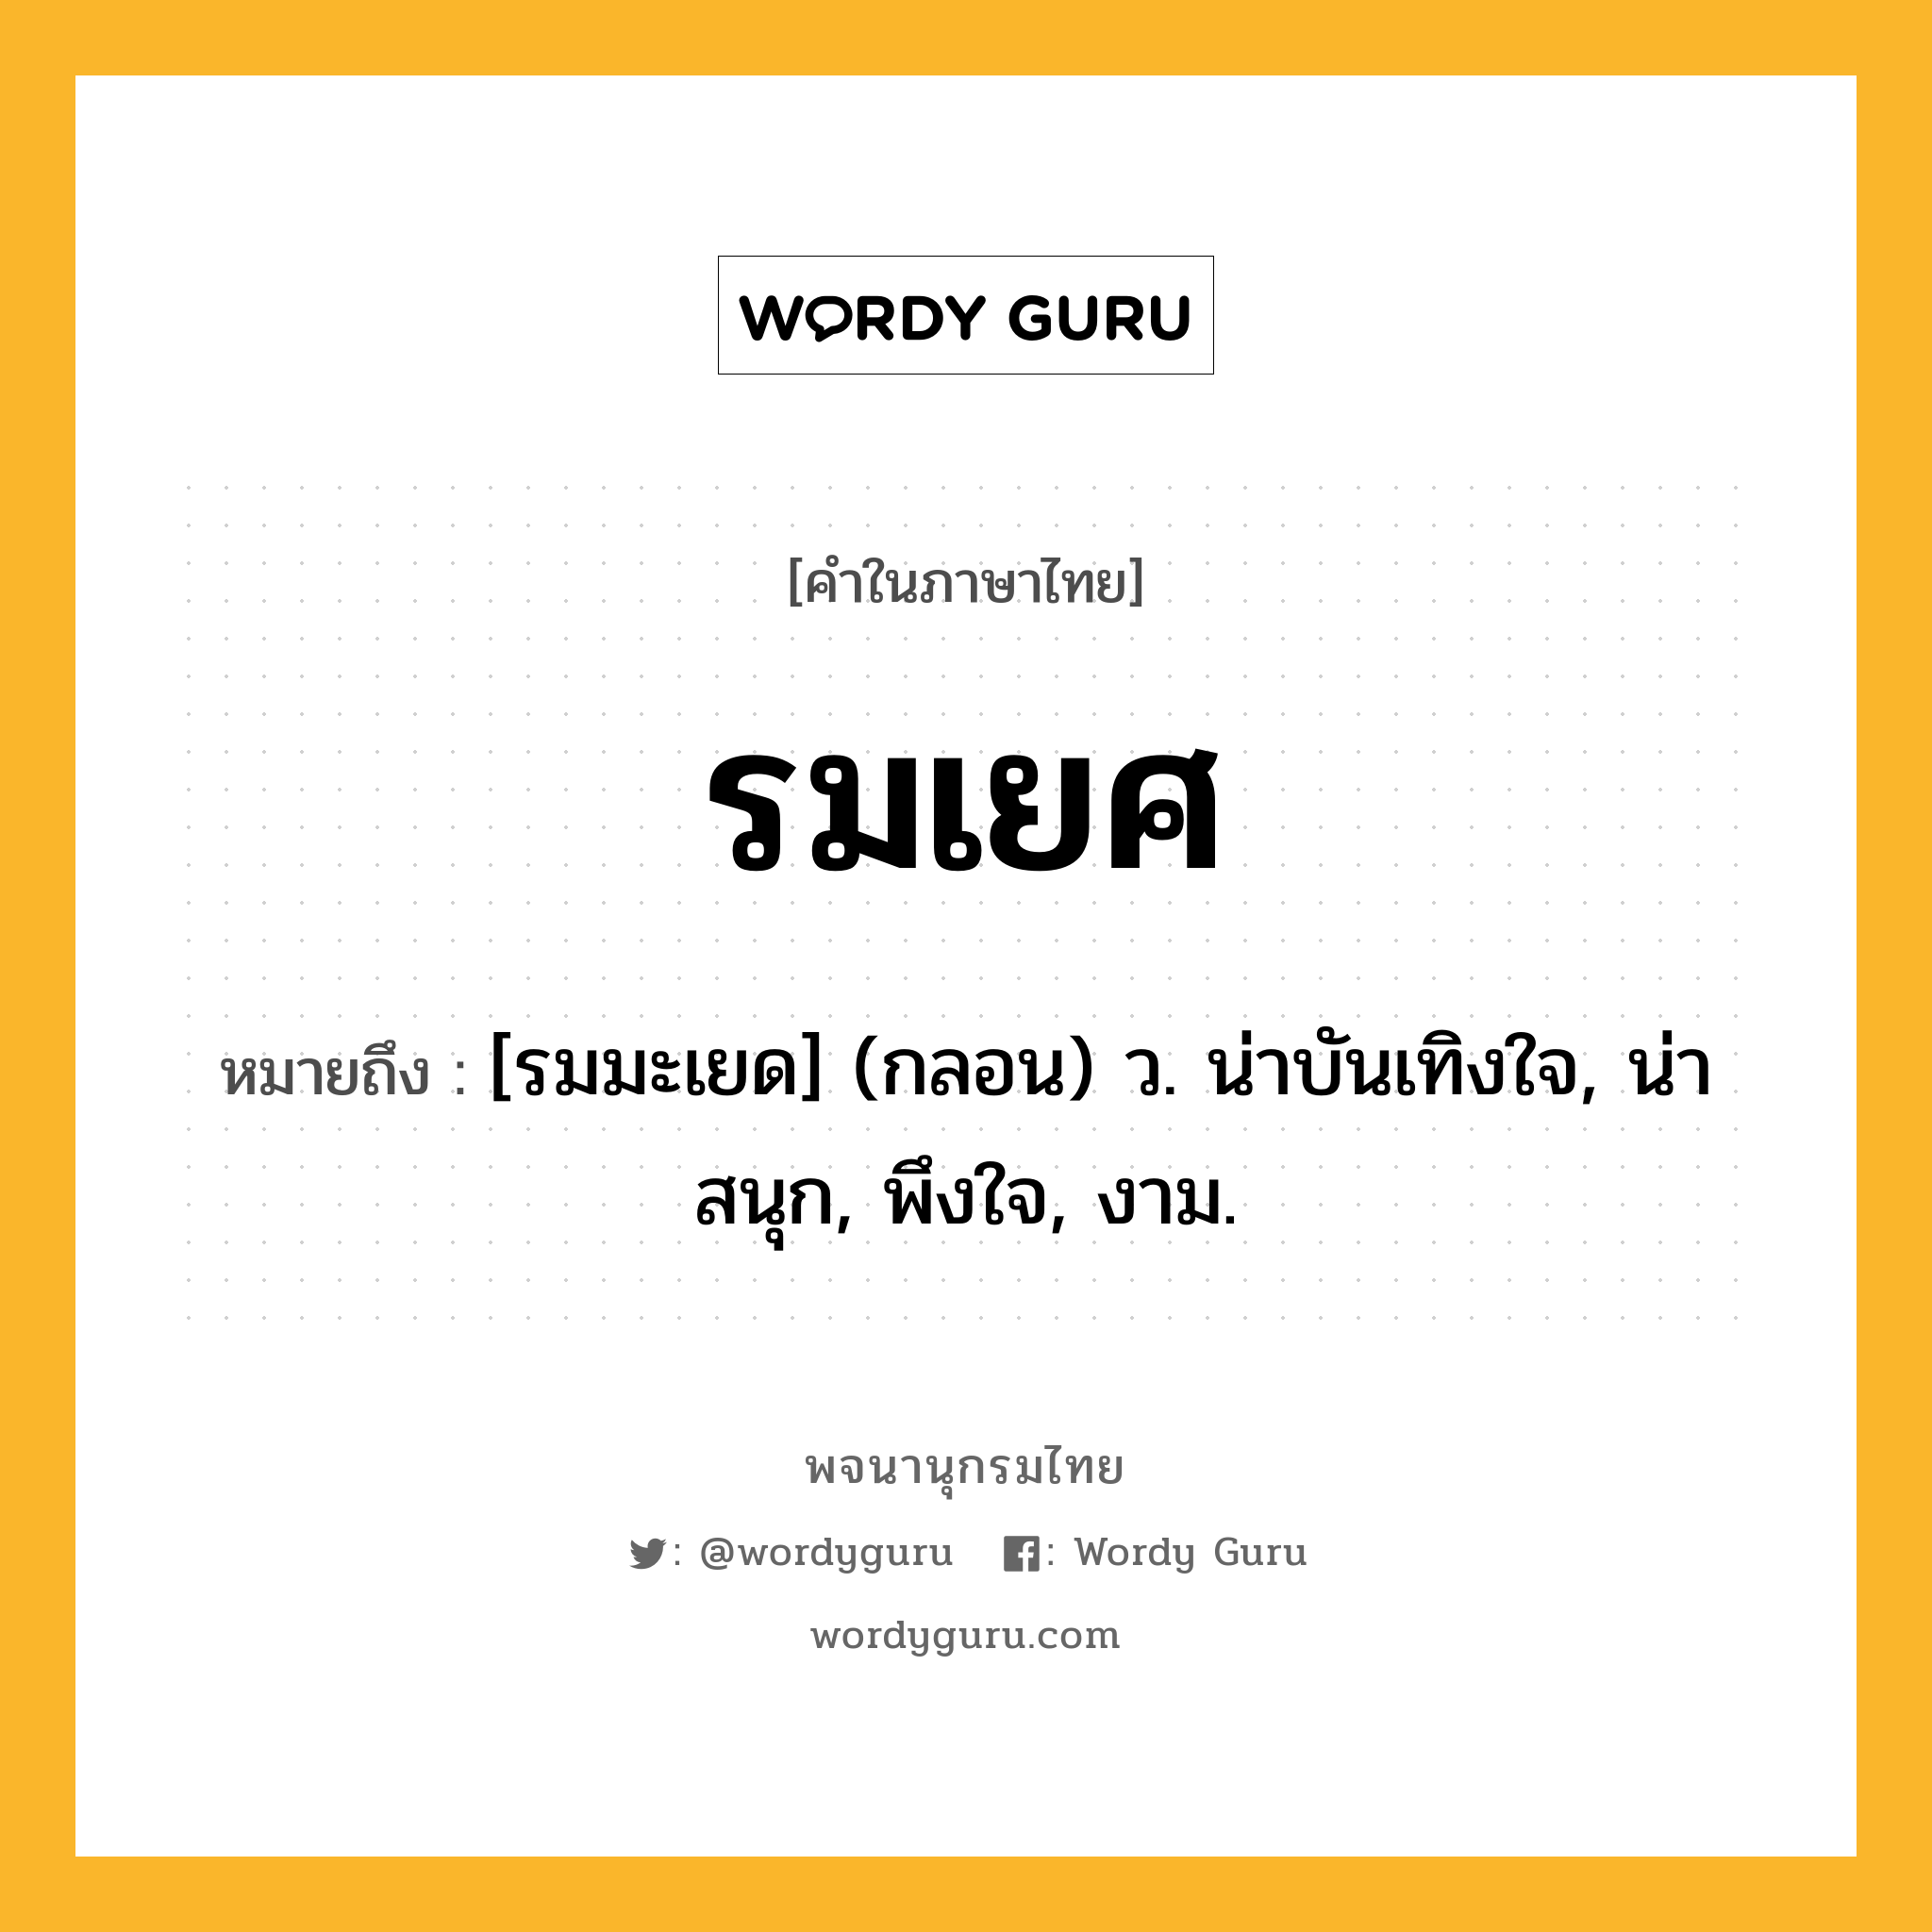 รมเยศ หมายถึงอะไร?, คำในภาษาไทย รมเยศ หมายถึง [รมมะเยด] (กลอน) ว. น่าบันเทิงใจ, น่าสนุก, พึงใจ, งาม.